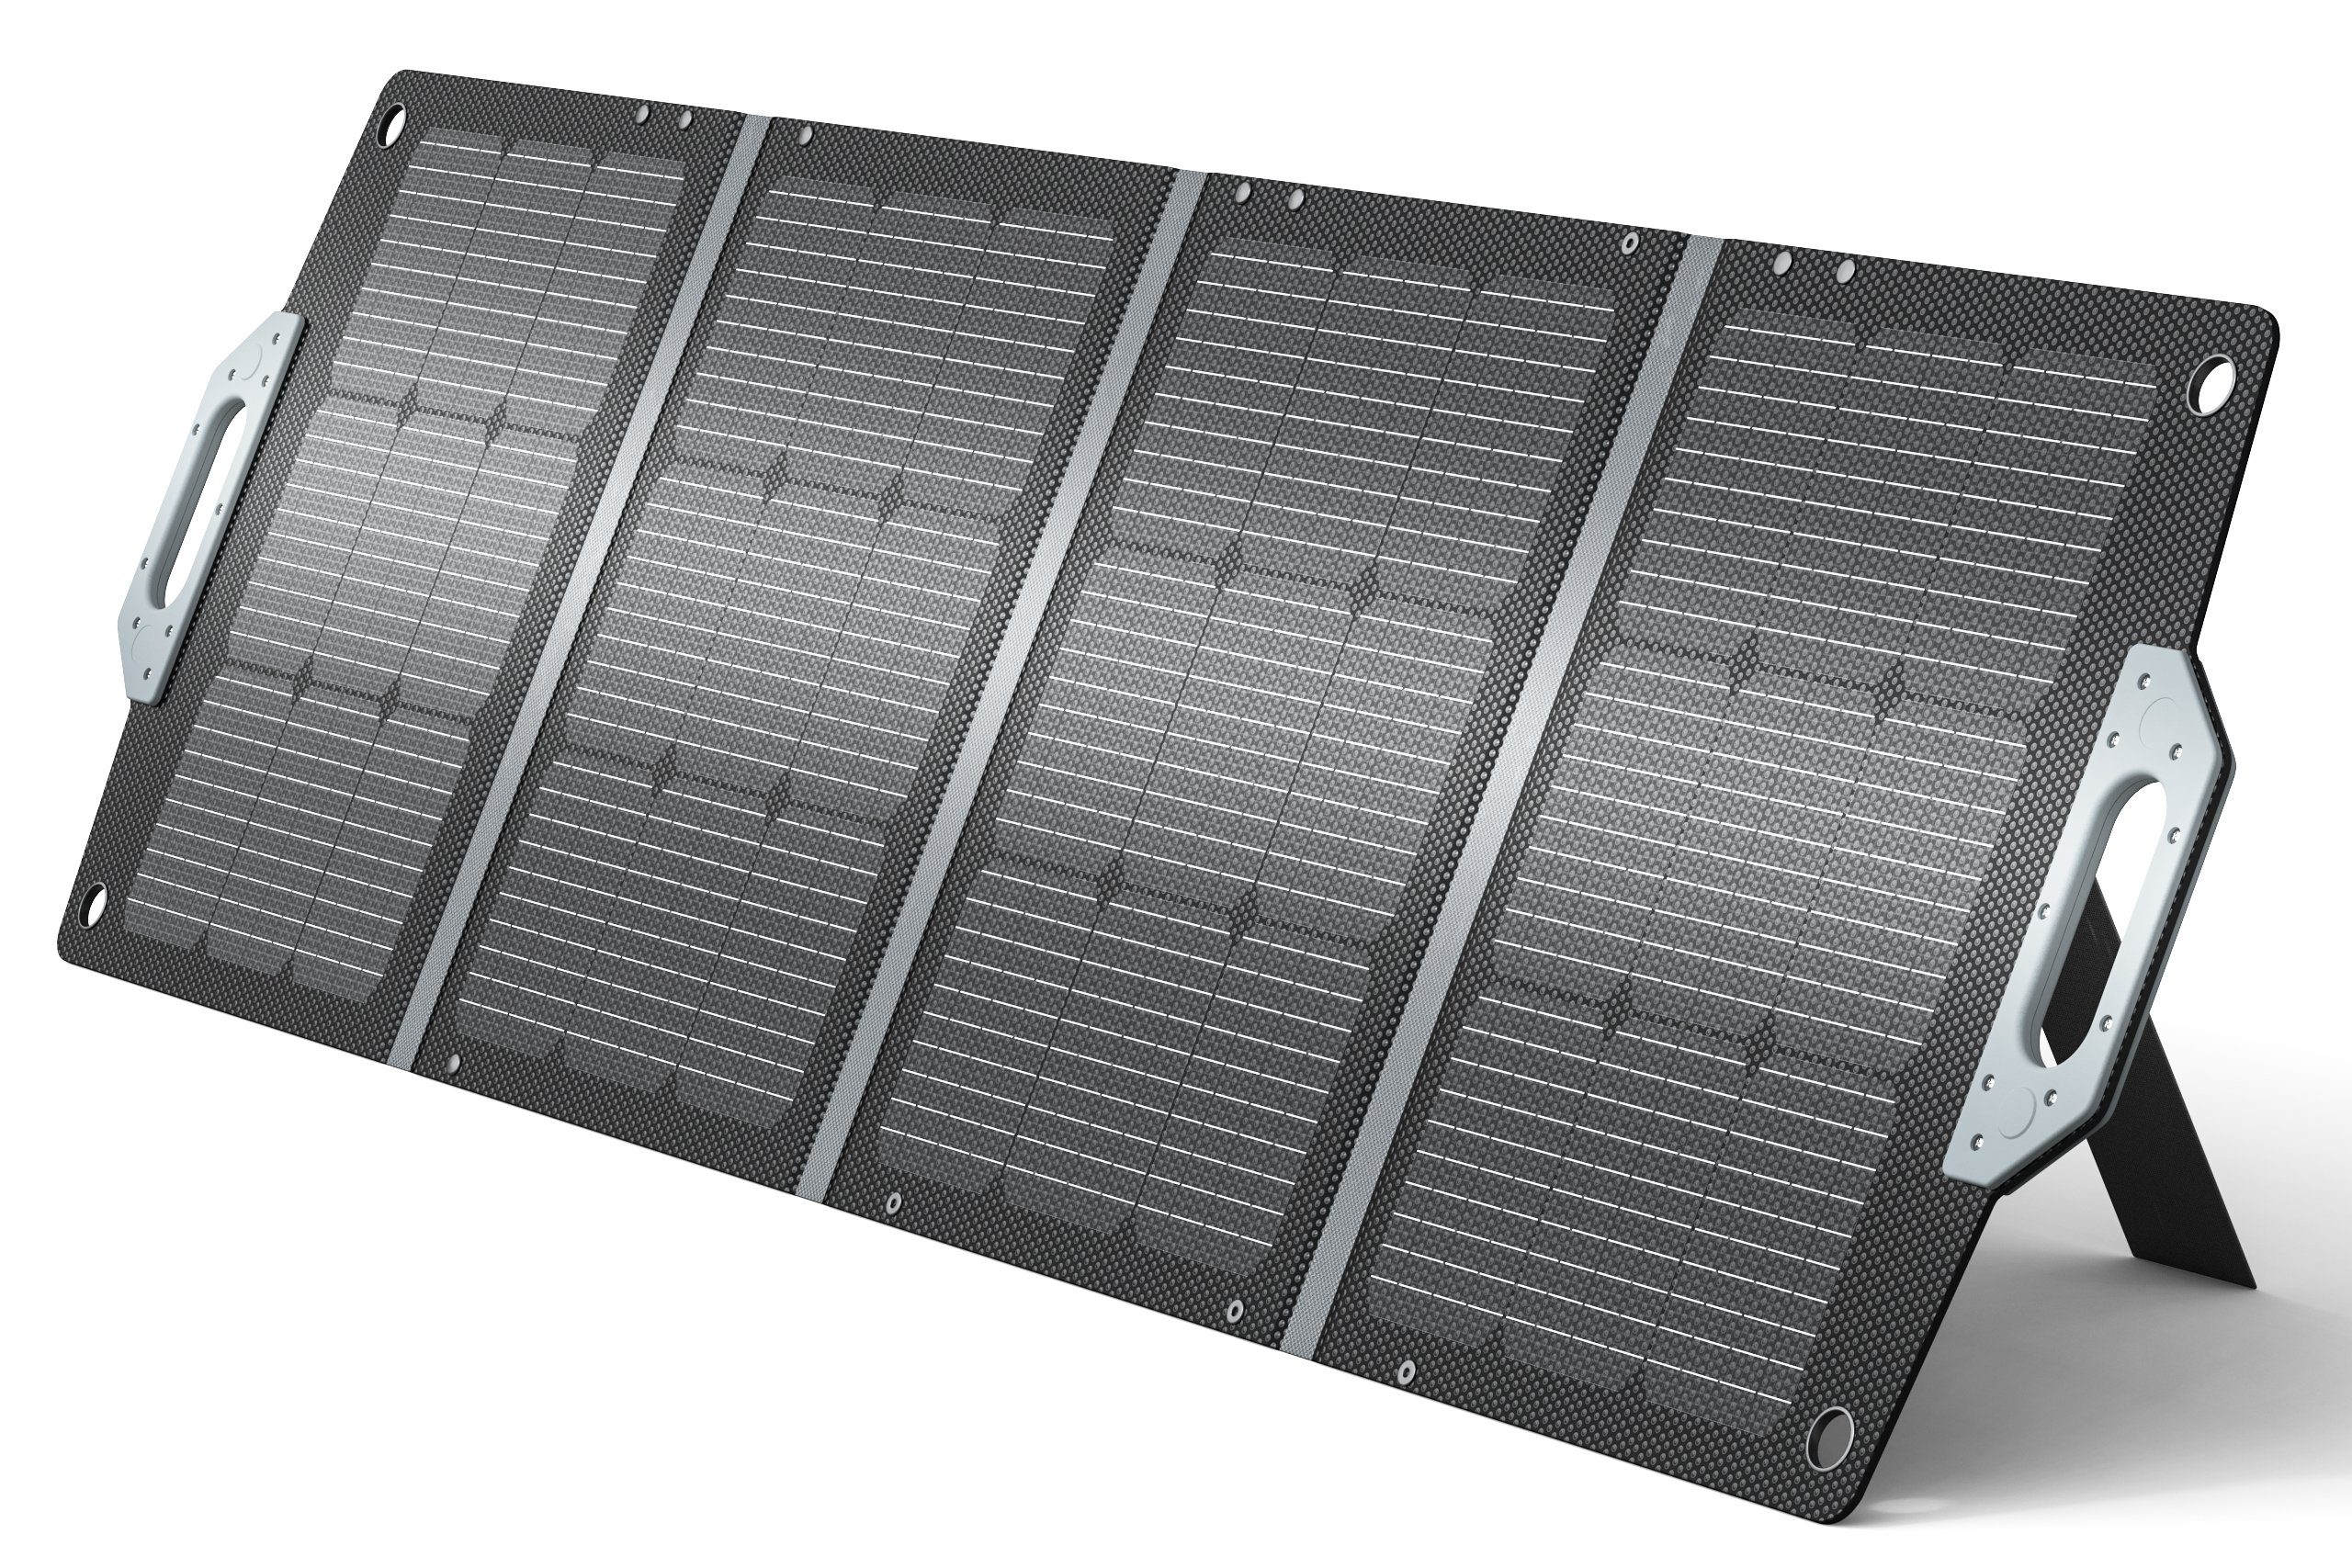 Daskoo Solaranlage Tragbar Solarpanels Faltbar Solarmodul Monokristallin, 240,00 W, mit Laderegler PV Modul Solaranlage für Gärten, Balkone, Dächer